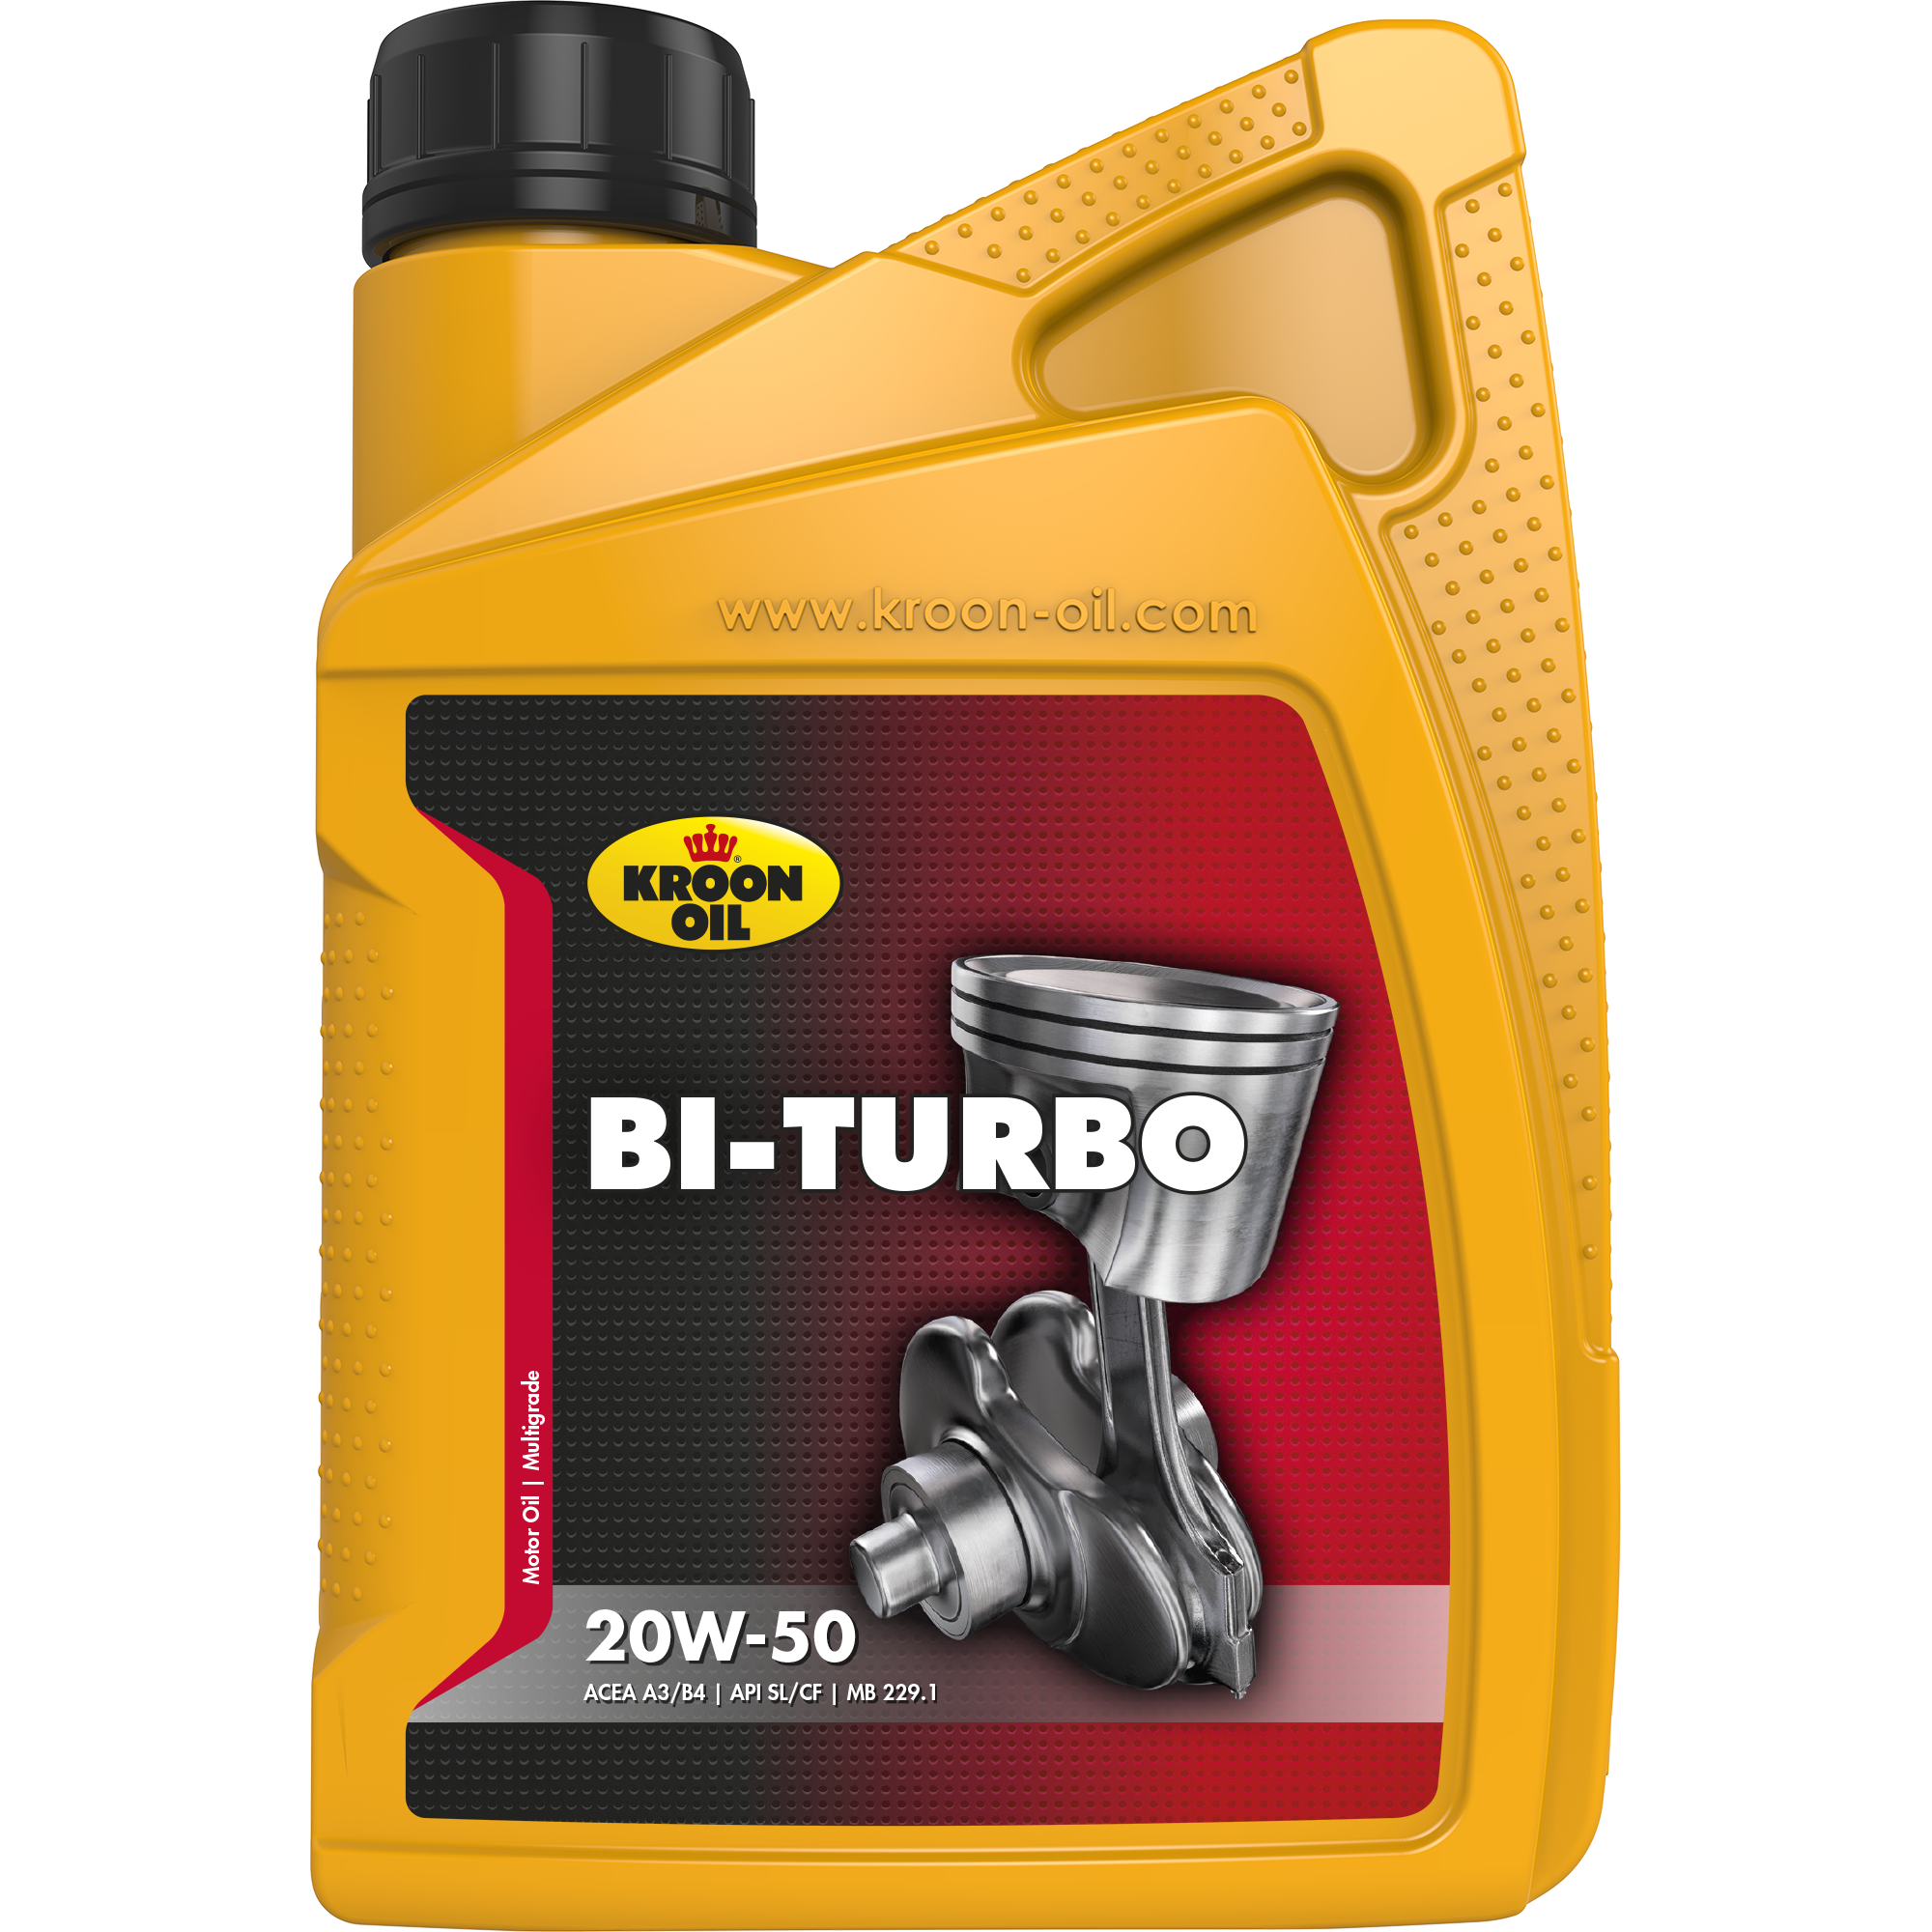 00221-1 Bi-Turbo 20W-50 is een universele, minerale motorolie, gebaseerd op hoogwaardige solvent geraffineerde basisoliën.